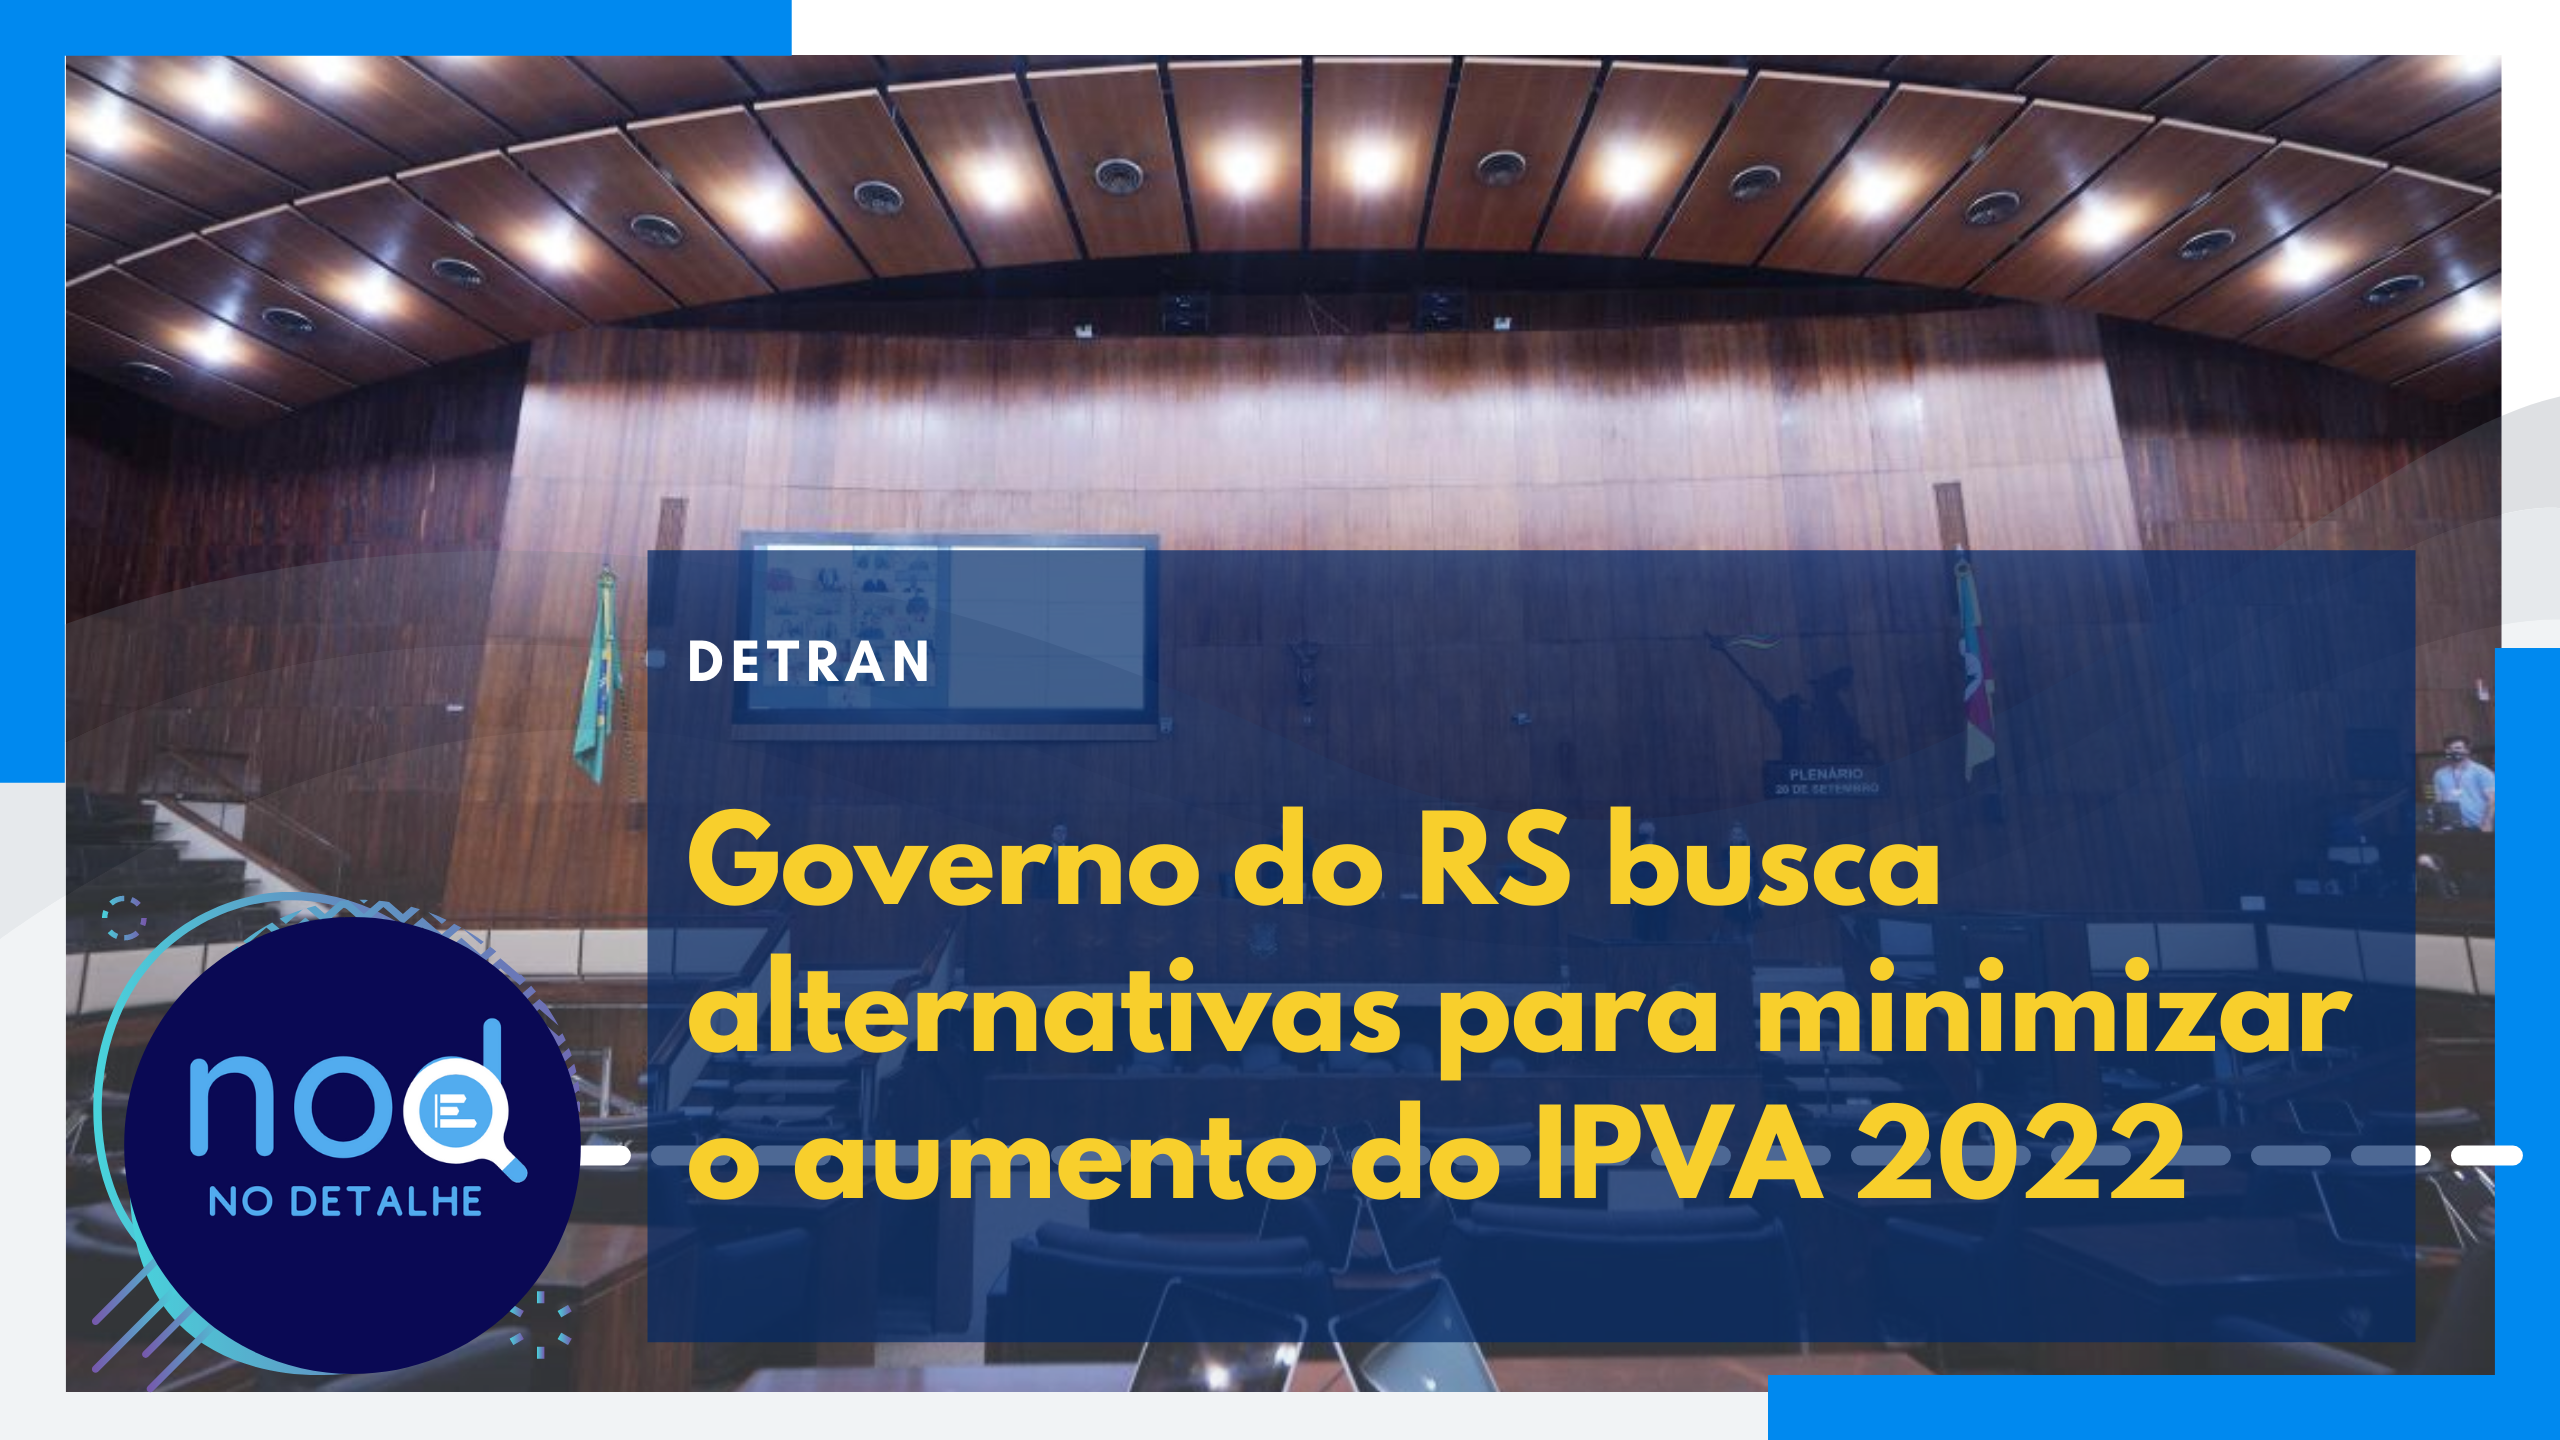 Governo do RS busca alternativas para minimizar o aumento do IPVA 2022